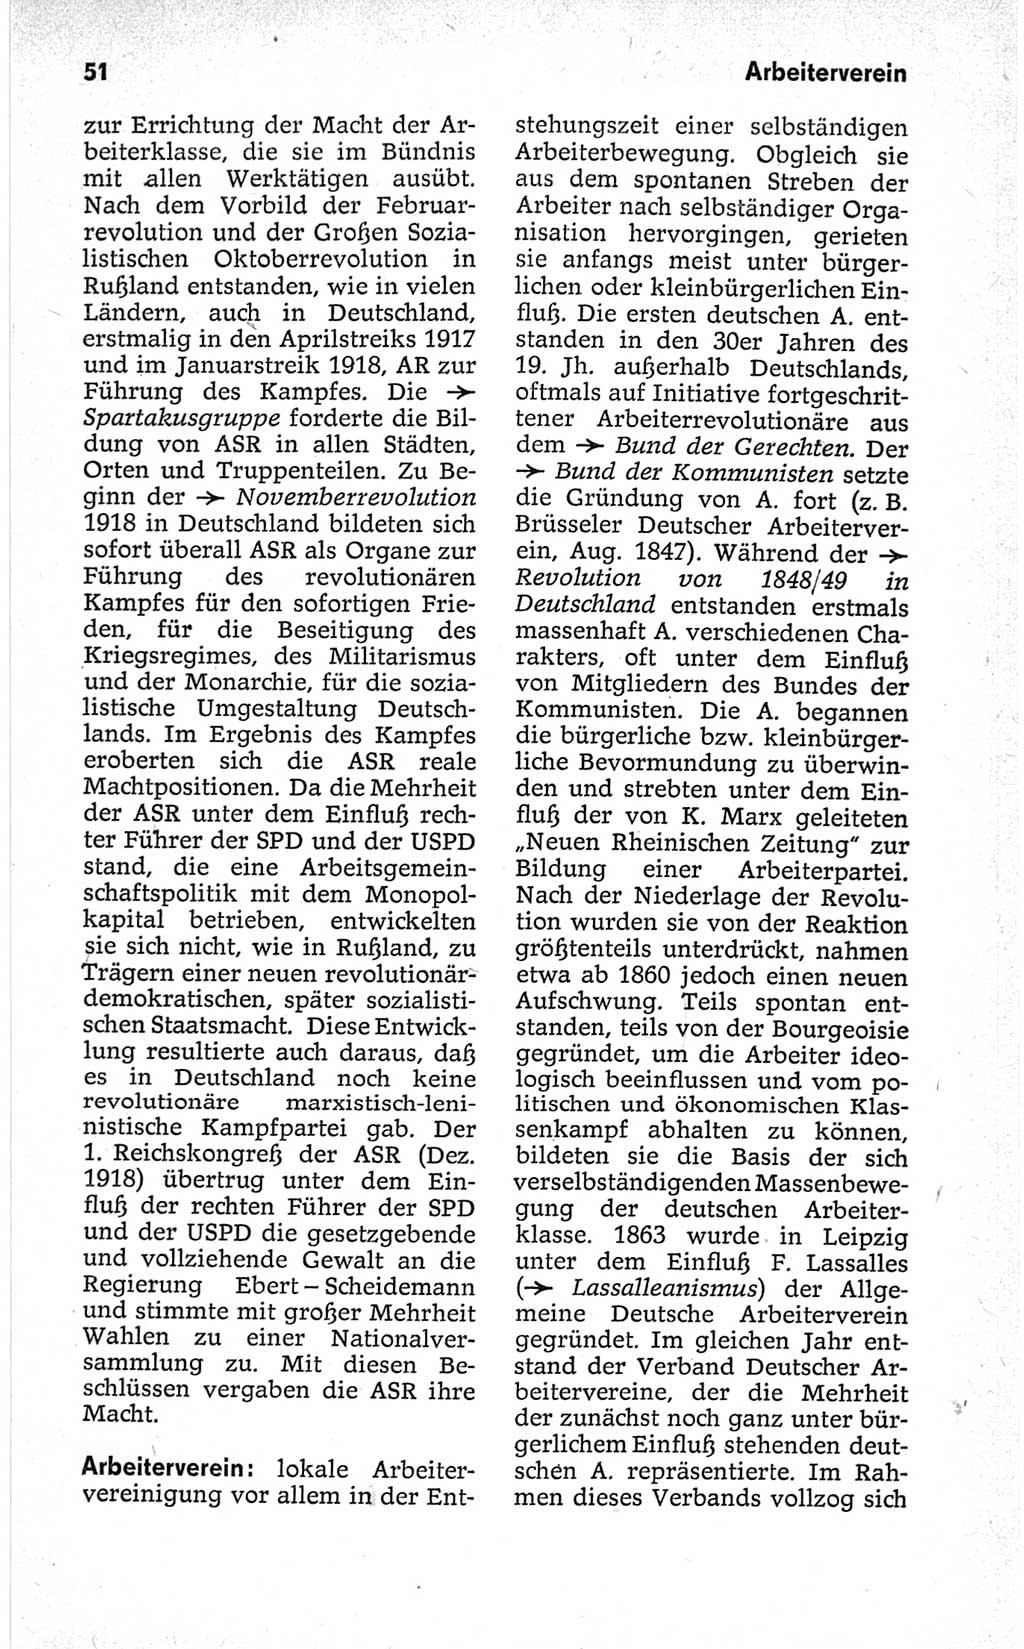 Kleines politisches Wörterbuch [Deutsche Demokratische Republik (DDR)] 1967, Seite 51 (Kl. pol. Wb. DDR 1967, S. 51)